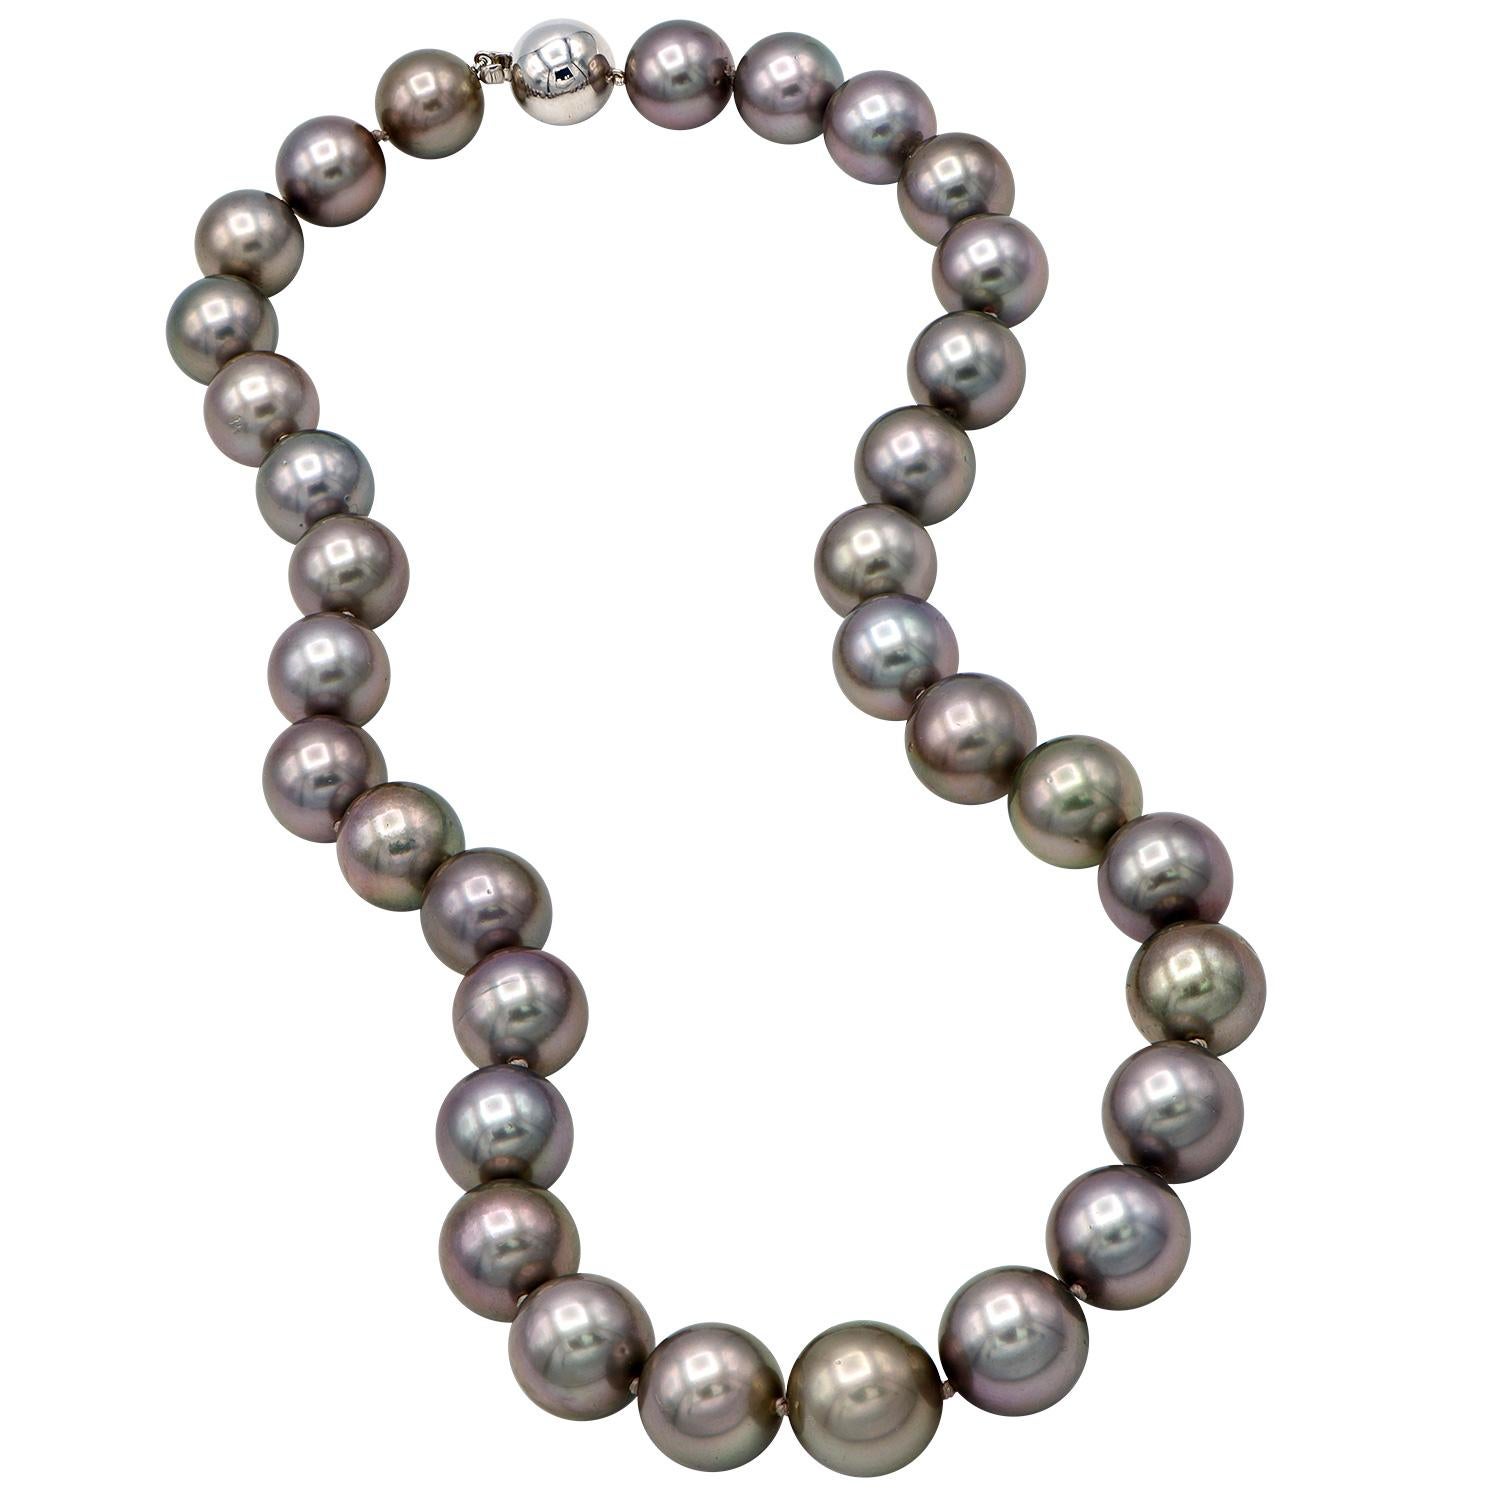 Ce magnifique collier de perles noires de Tahiti est superbe avec des nuances de rose. Ces perles de 12 à 14,2 mm forment un cordon de 18 pouces composé de 33 perles. Les perles sont enfilées de manière experte avec un double nœud entre chaque perle